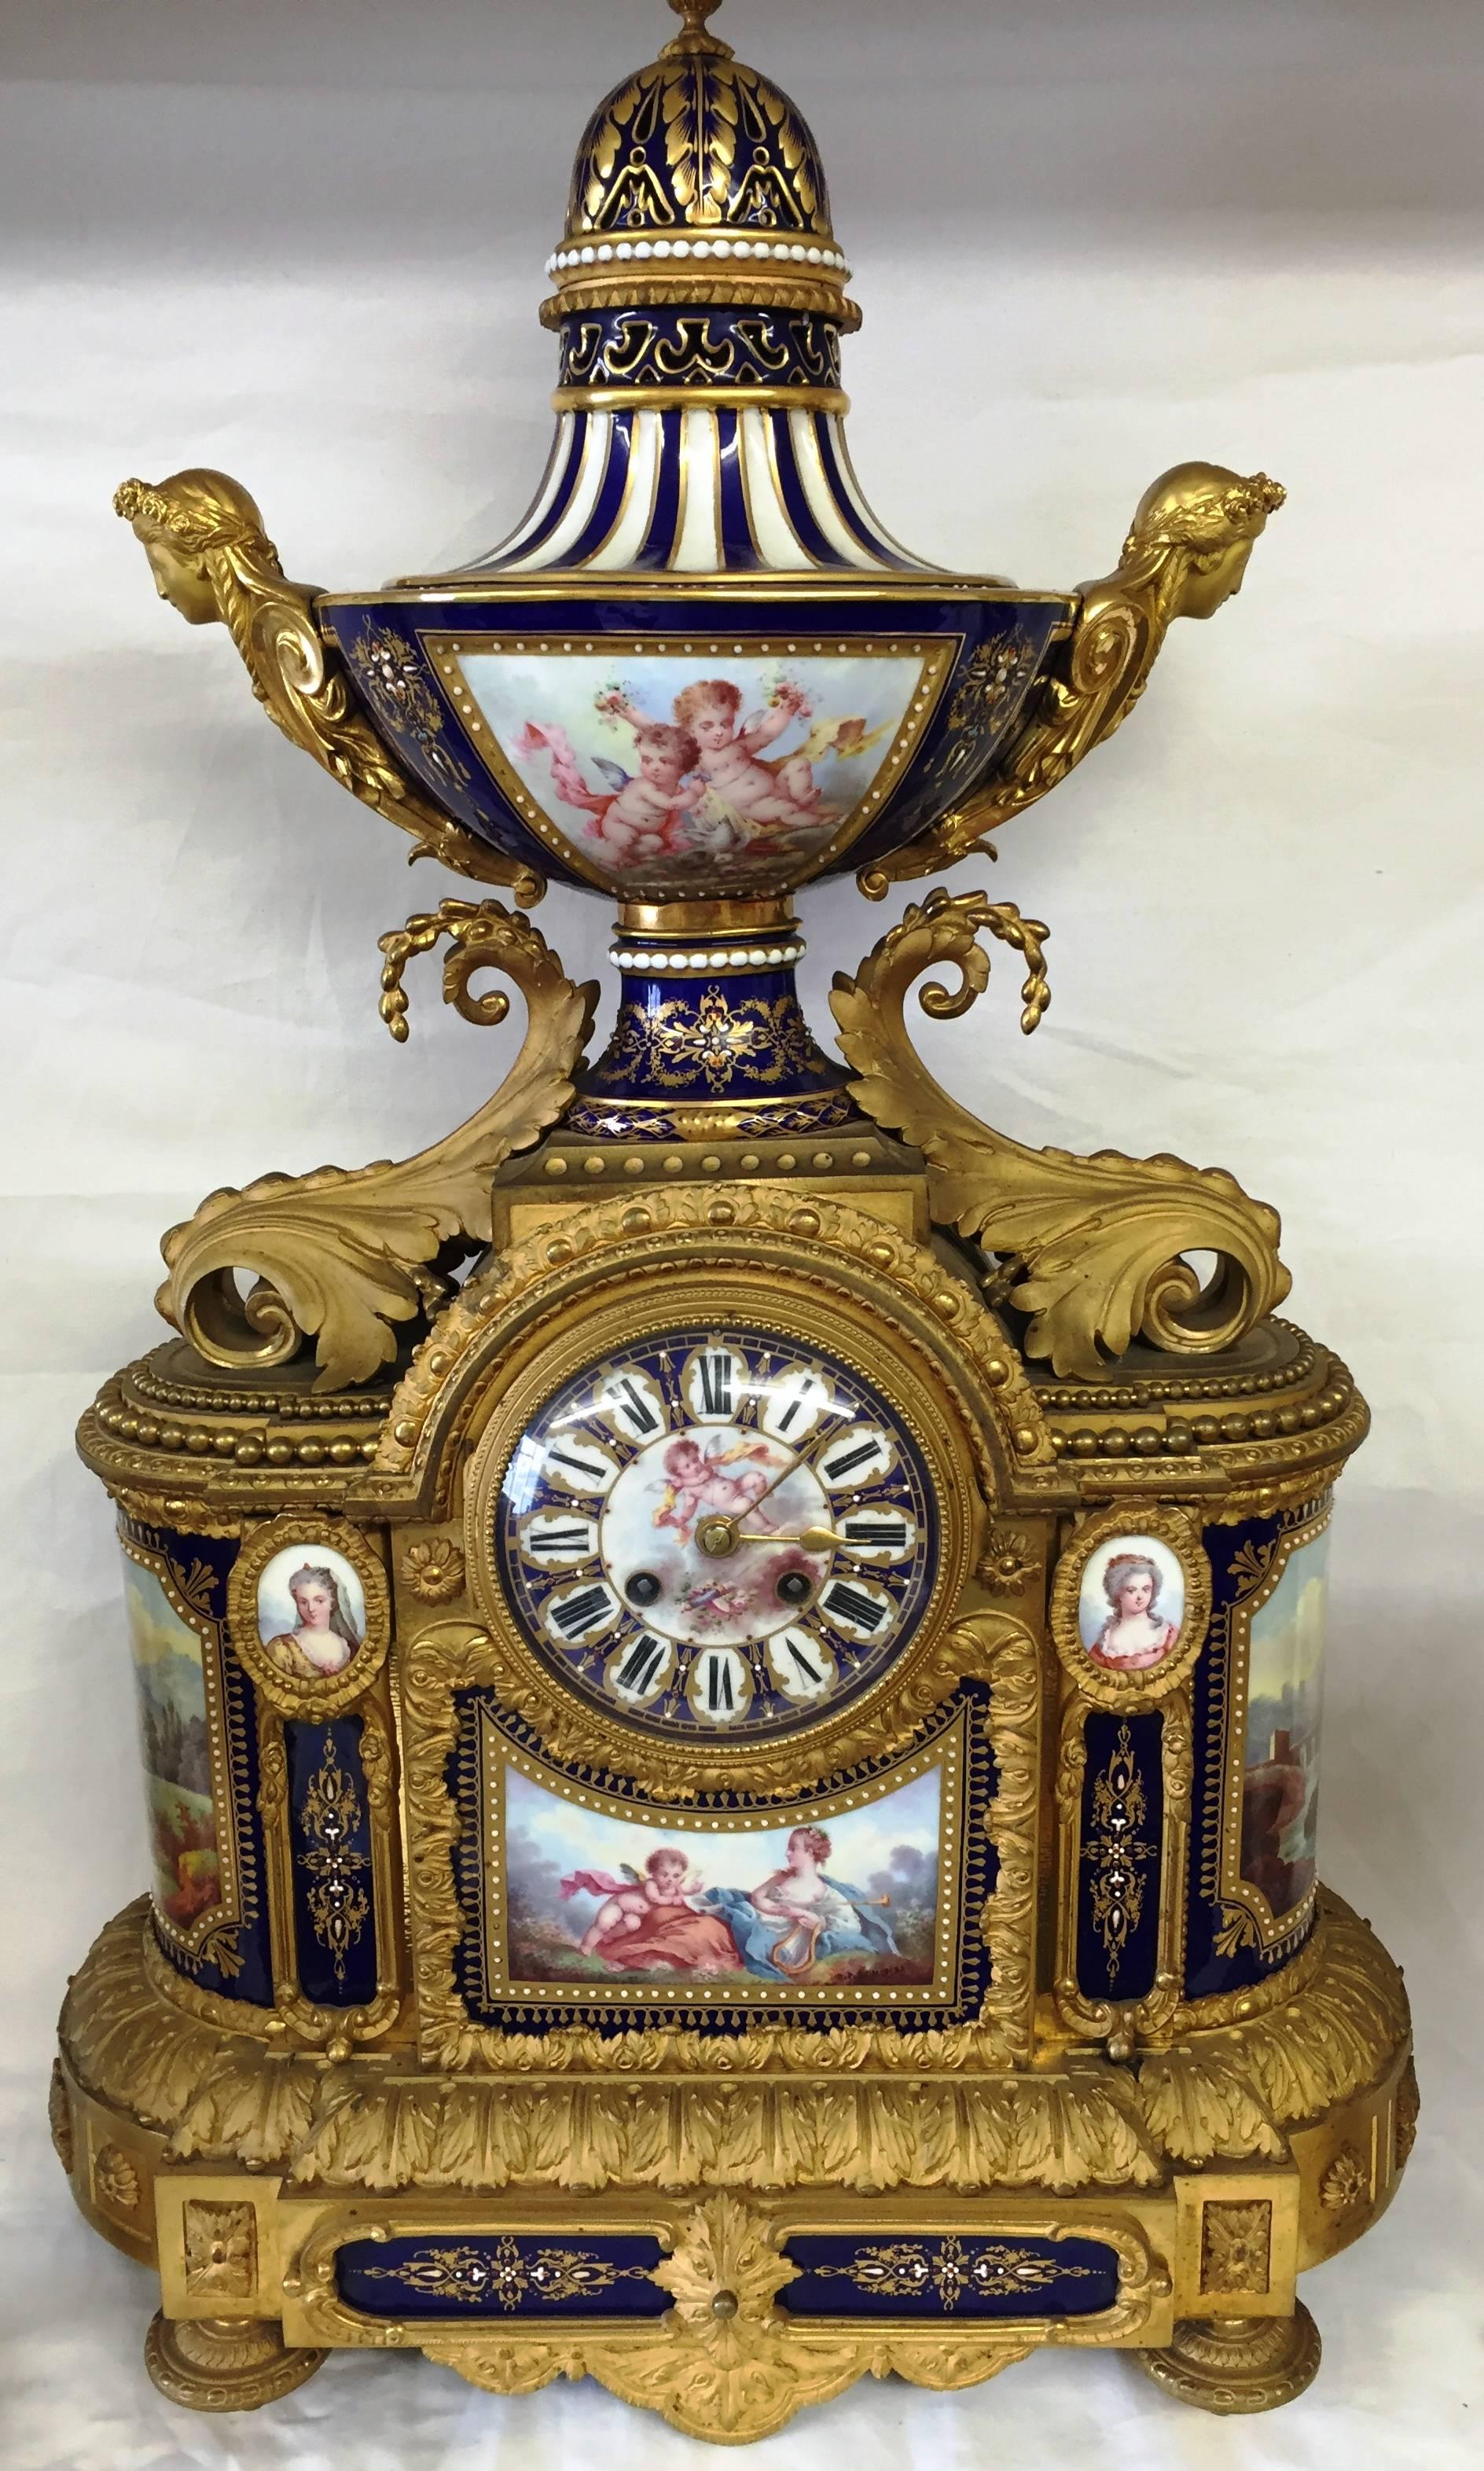 Eine feine Qualität 19. Jahrhundert Französisch Sevres Porzellan und vergoldet Ormolu Uhr Garnitur. Mit einem sehr beeindruckenden Paar von fünf Zweig Kandelaber jeweils mit Urnen, die romantische Szenen, ein Paar von Urnen mit Deckel und diese